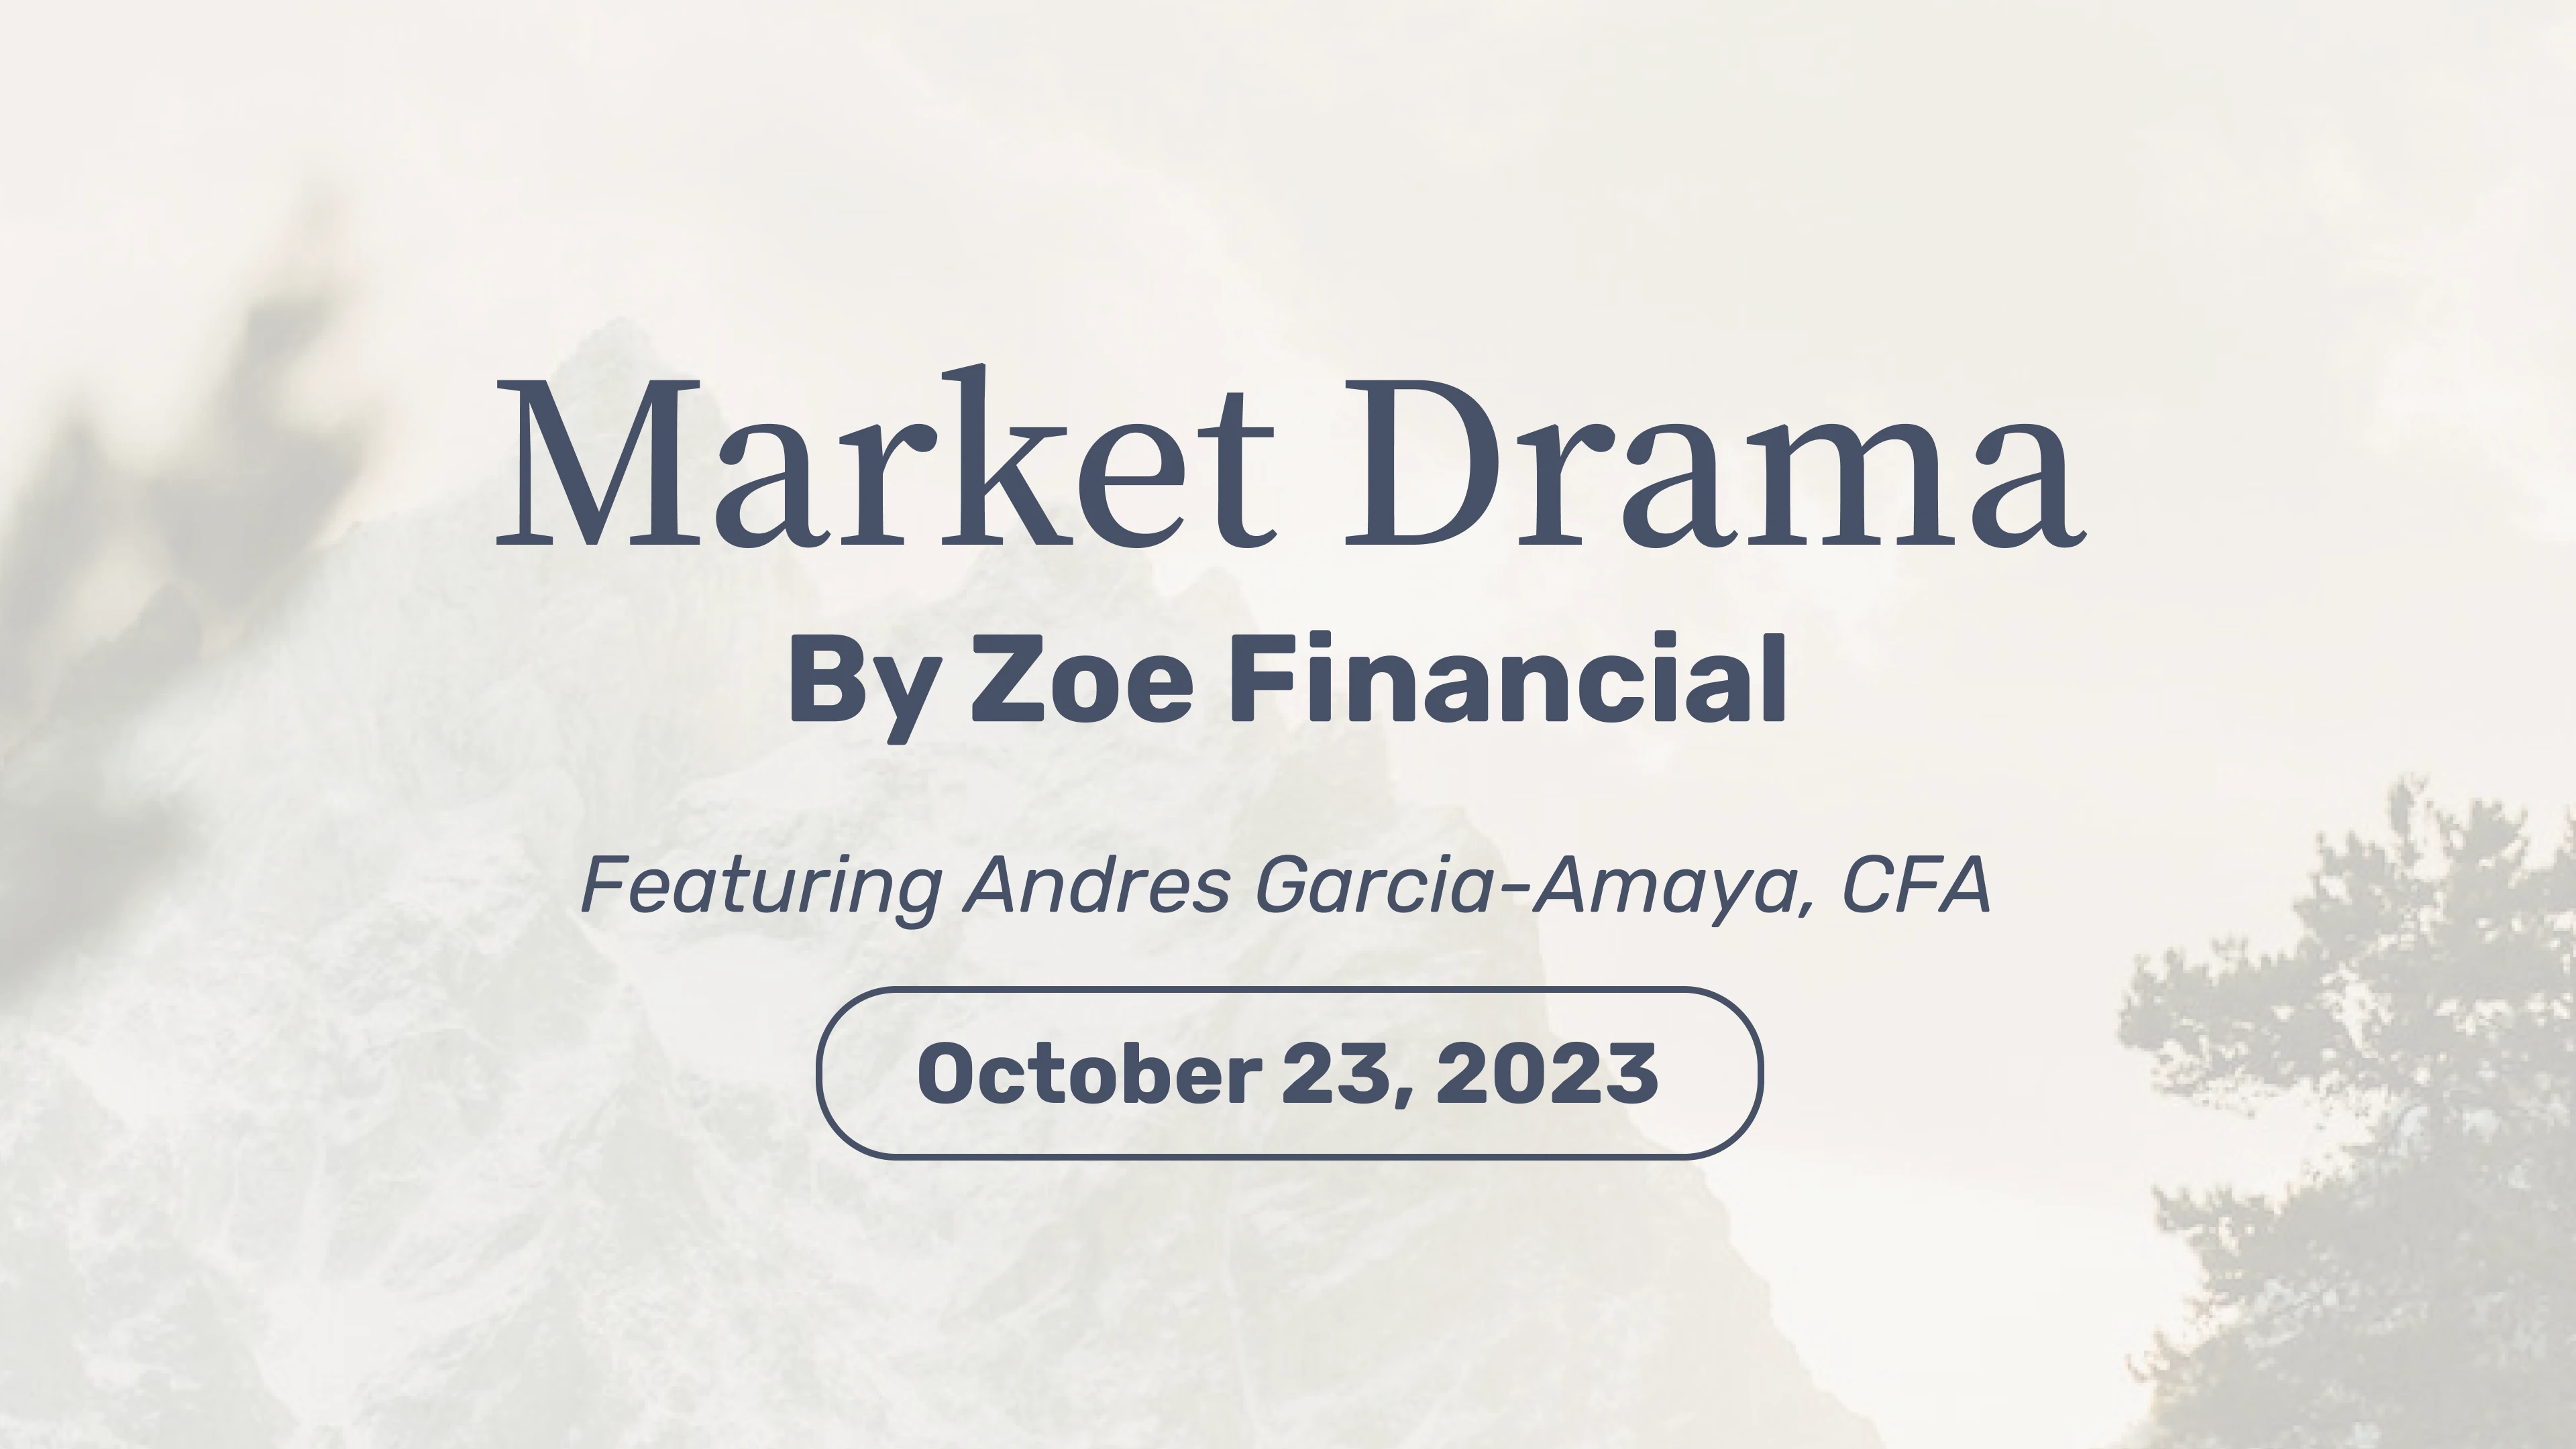 Market Drama October 23